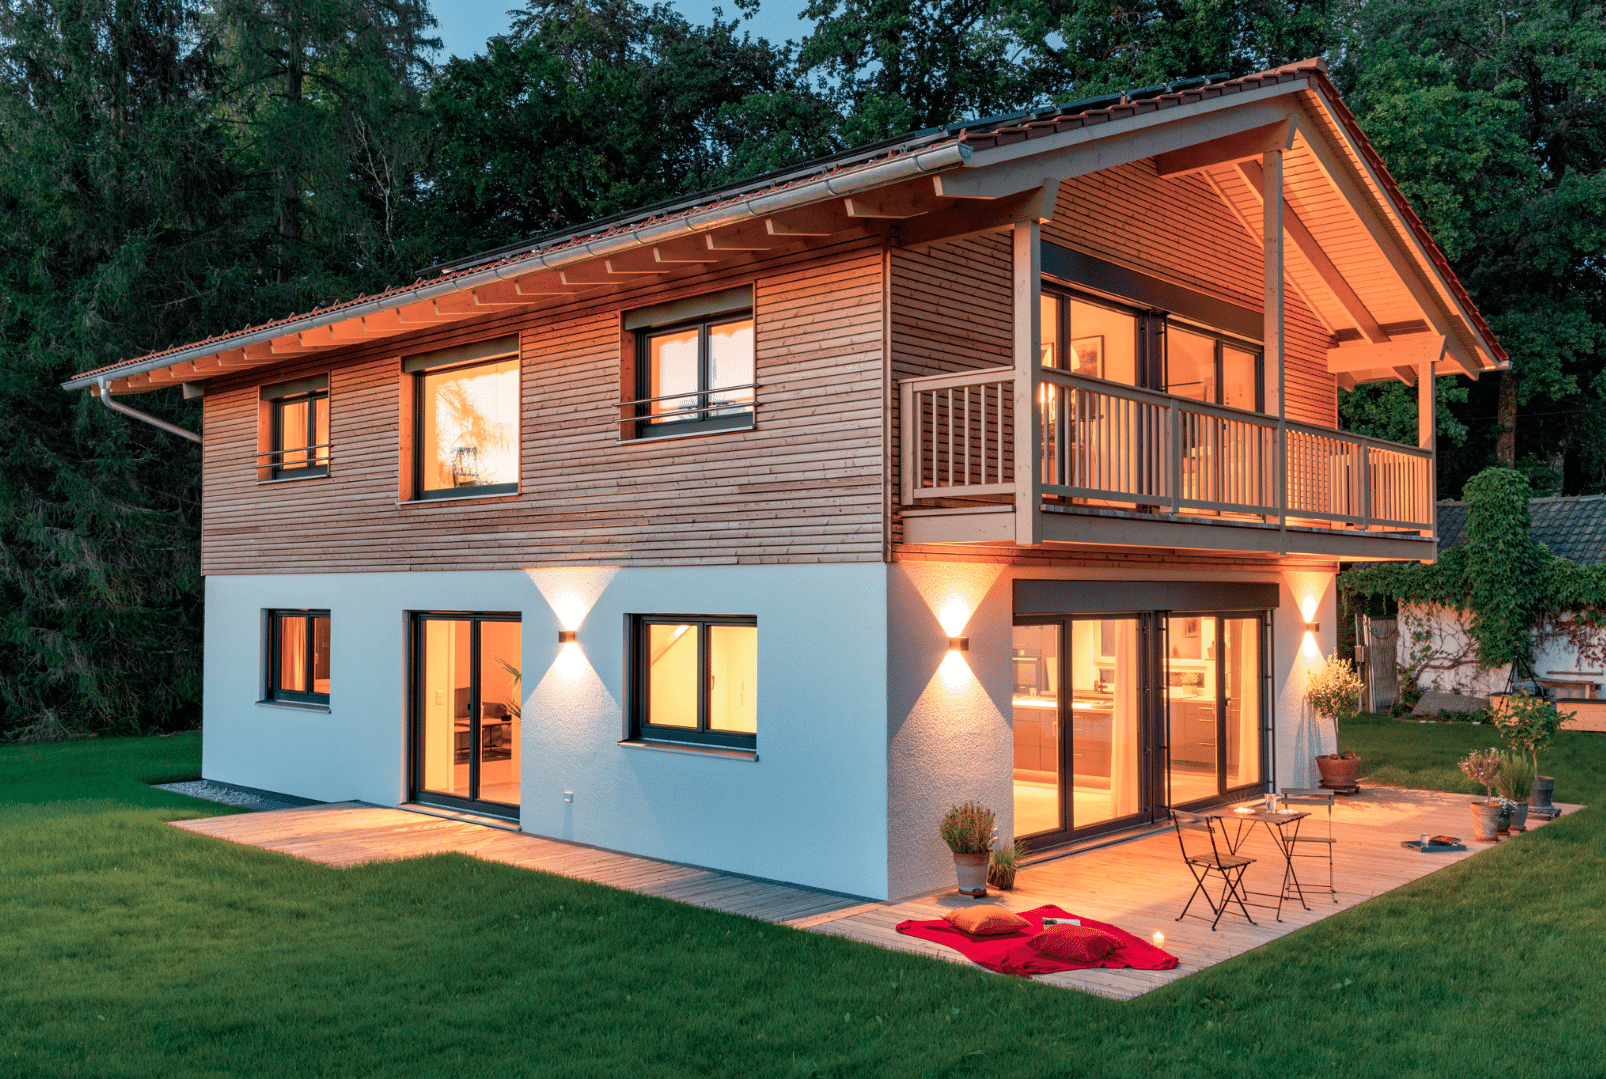 Einfamilienhaus von Regnauer Fertighaus mit Satteldach, teilweiser Holzverkleidung und großem Balkon.